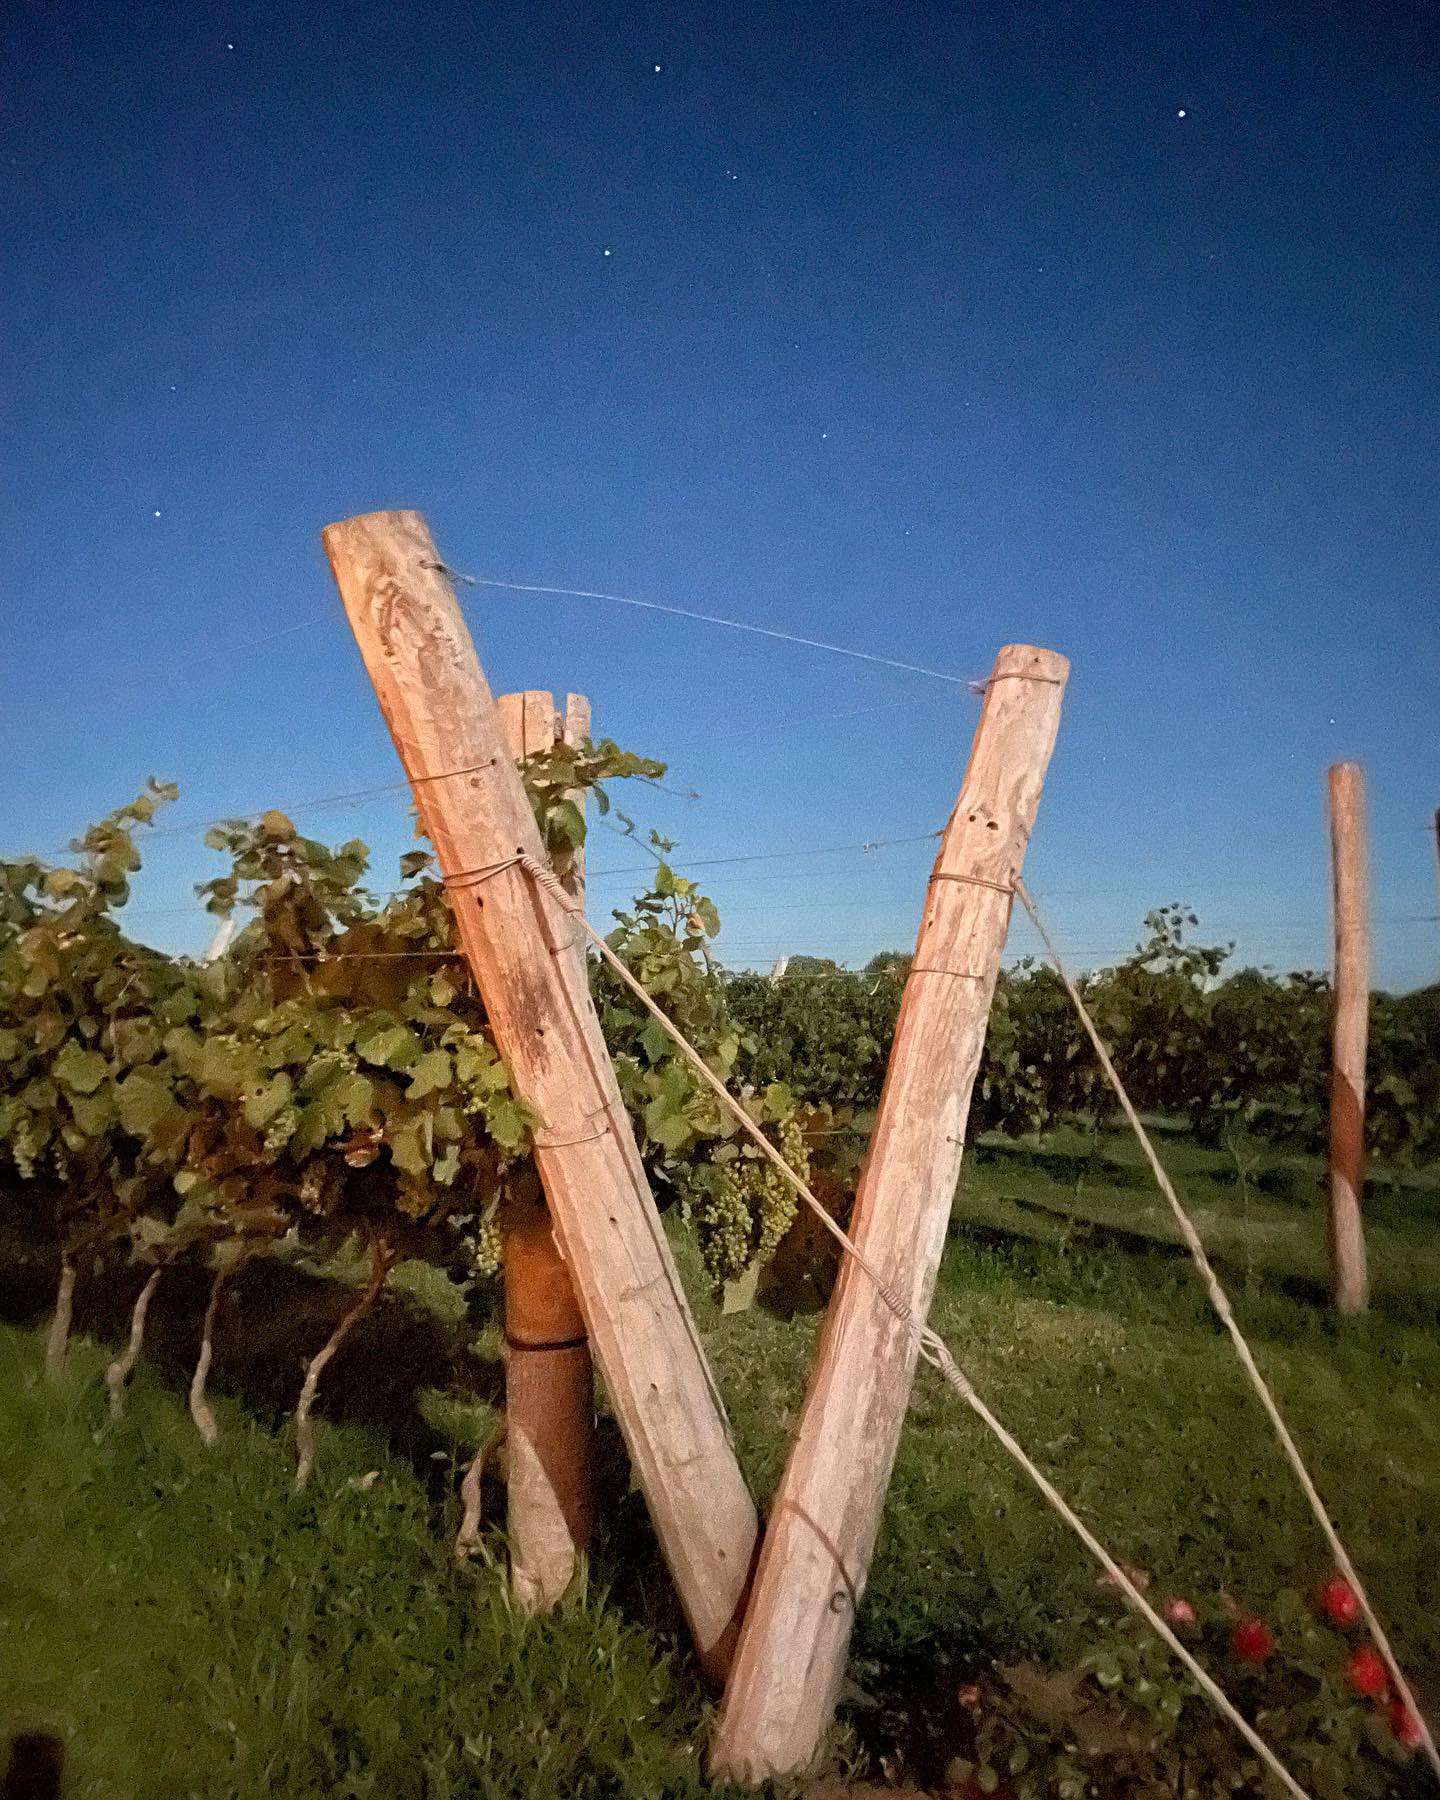 Vitivinicultura entrerriana: Ya son más de 70 los viñedos de la “renaciente” actividad